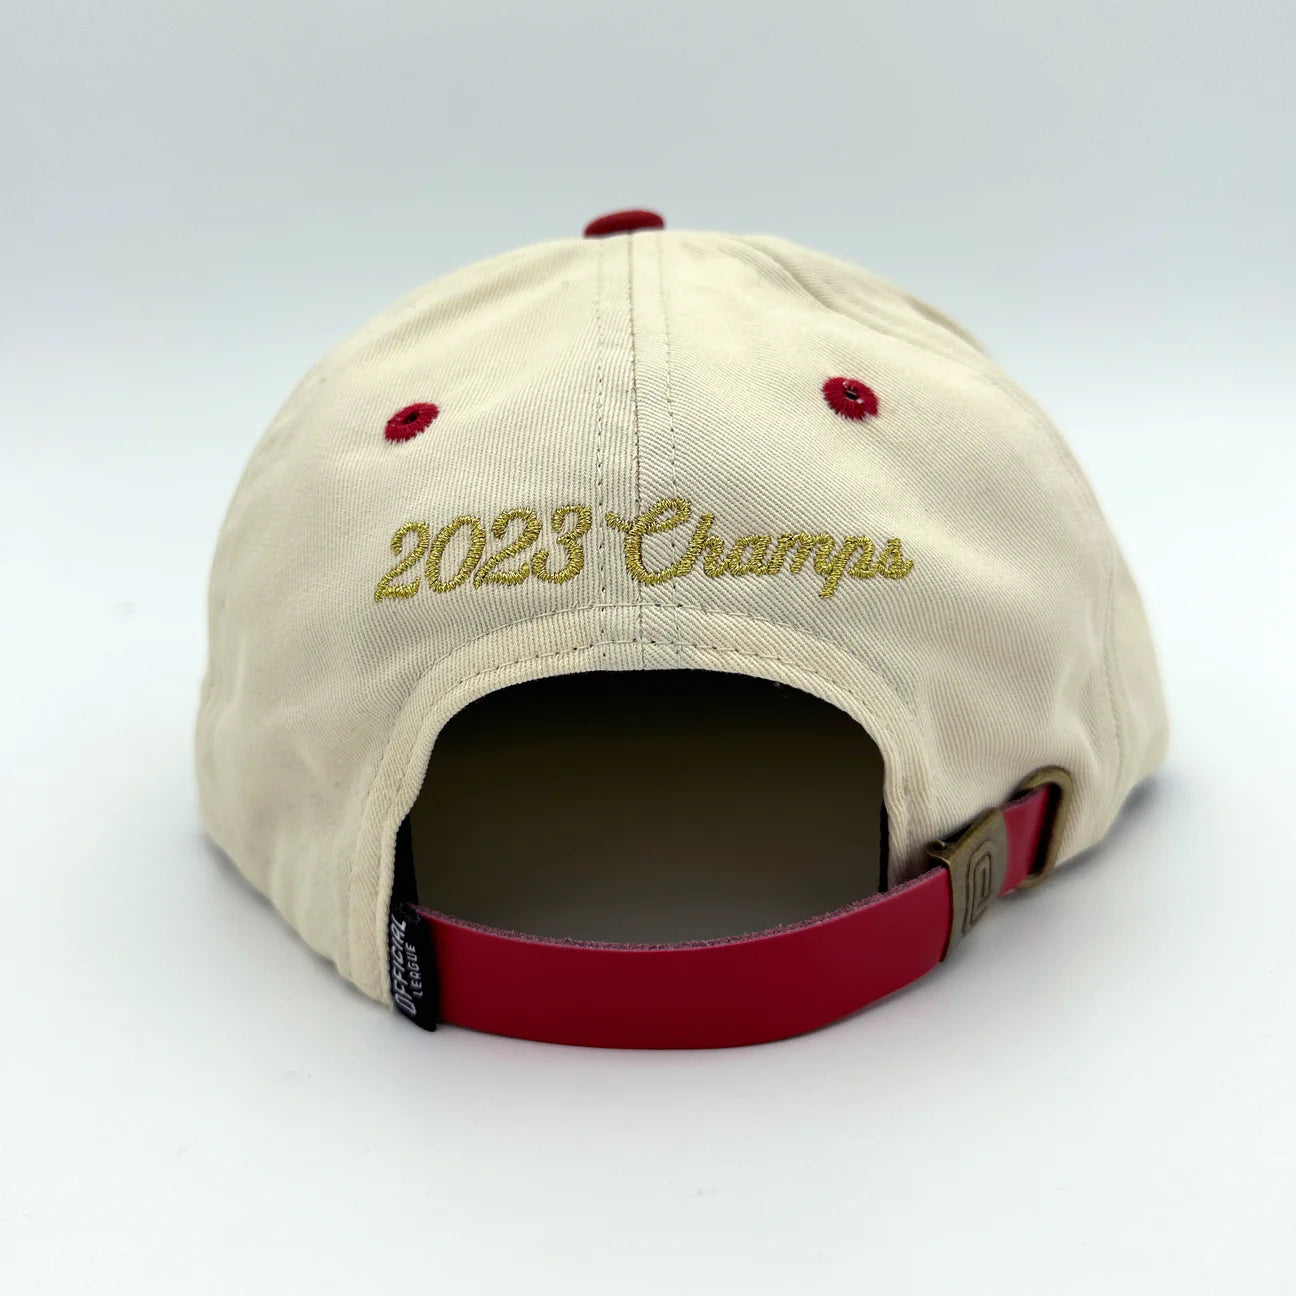 Official League Championship Hat